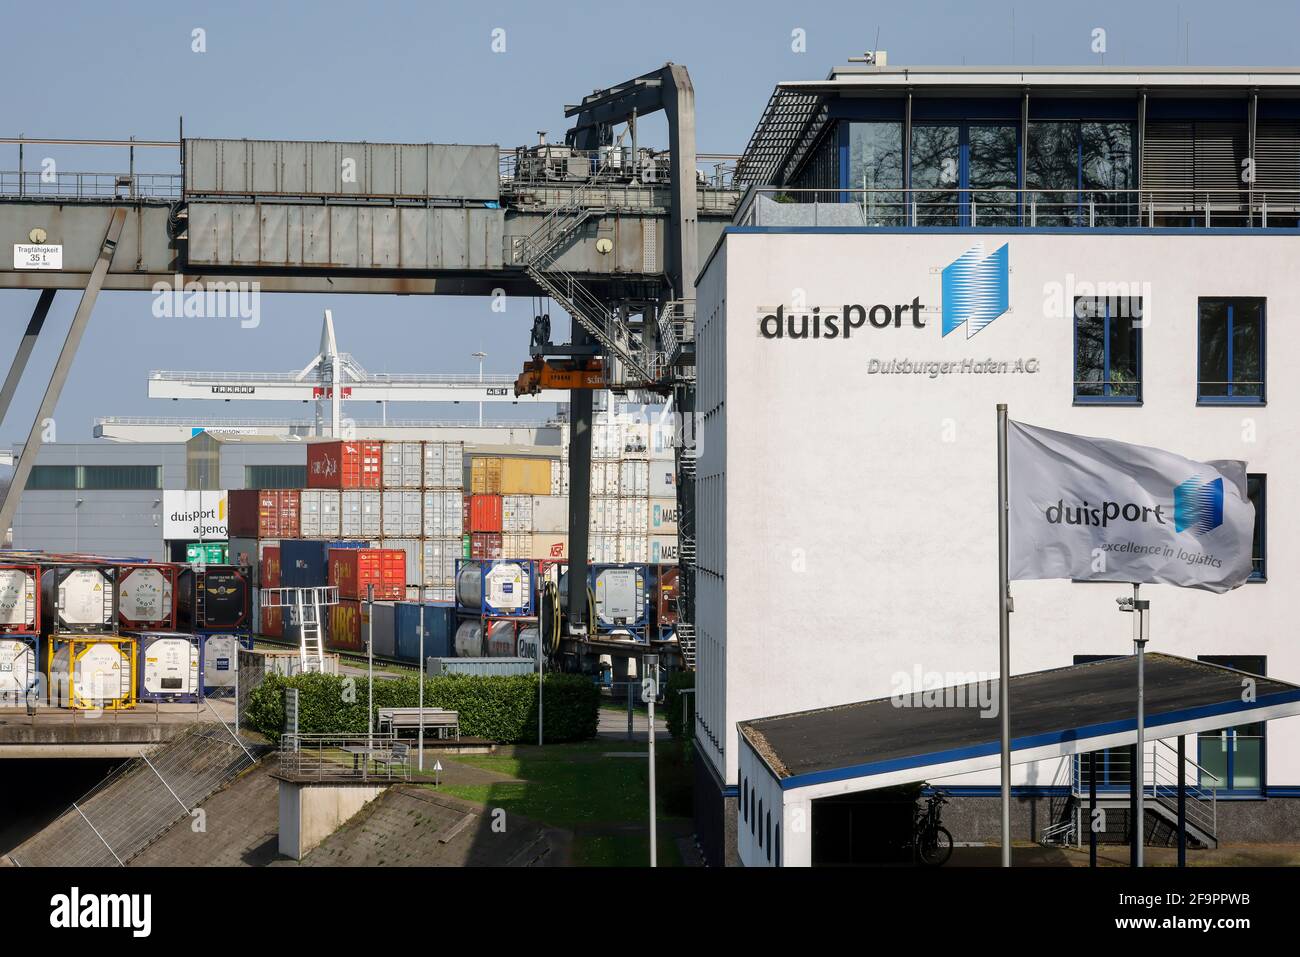 01.04.2021, Duisburg, Nordrhein-Westfalen, Deutschland - Duisburger Hafen AG, Duisport, Firmensitz am Containerterminal in Duisburg Stockfoto